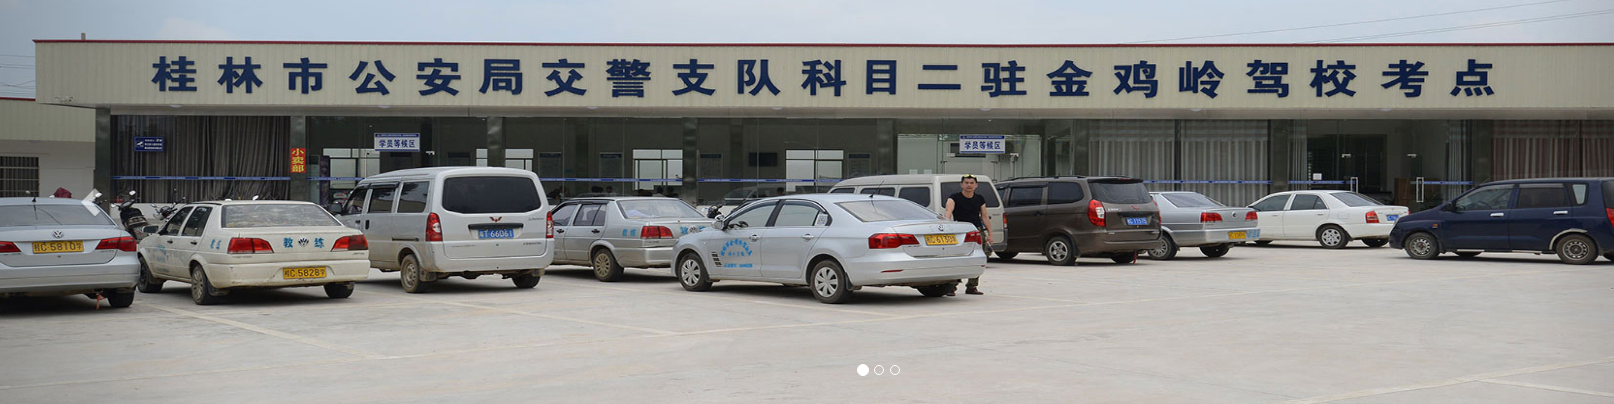 桂林学车考驾照公司报名电话_桂林其他教育、培训多少钱